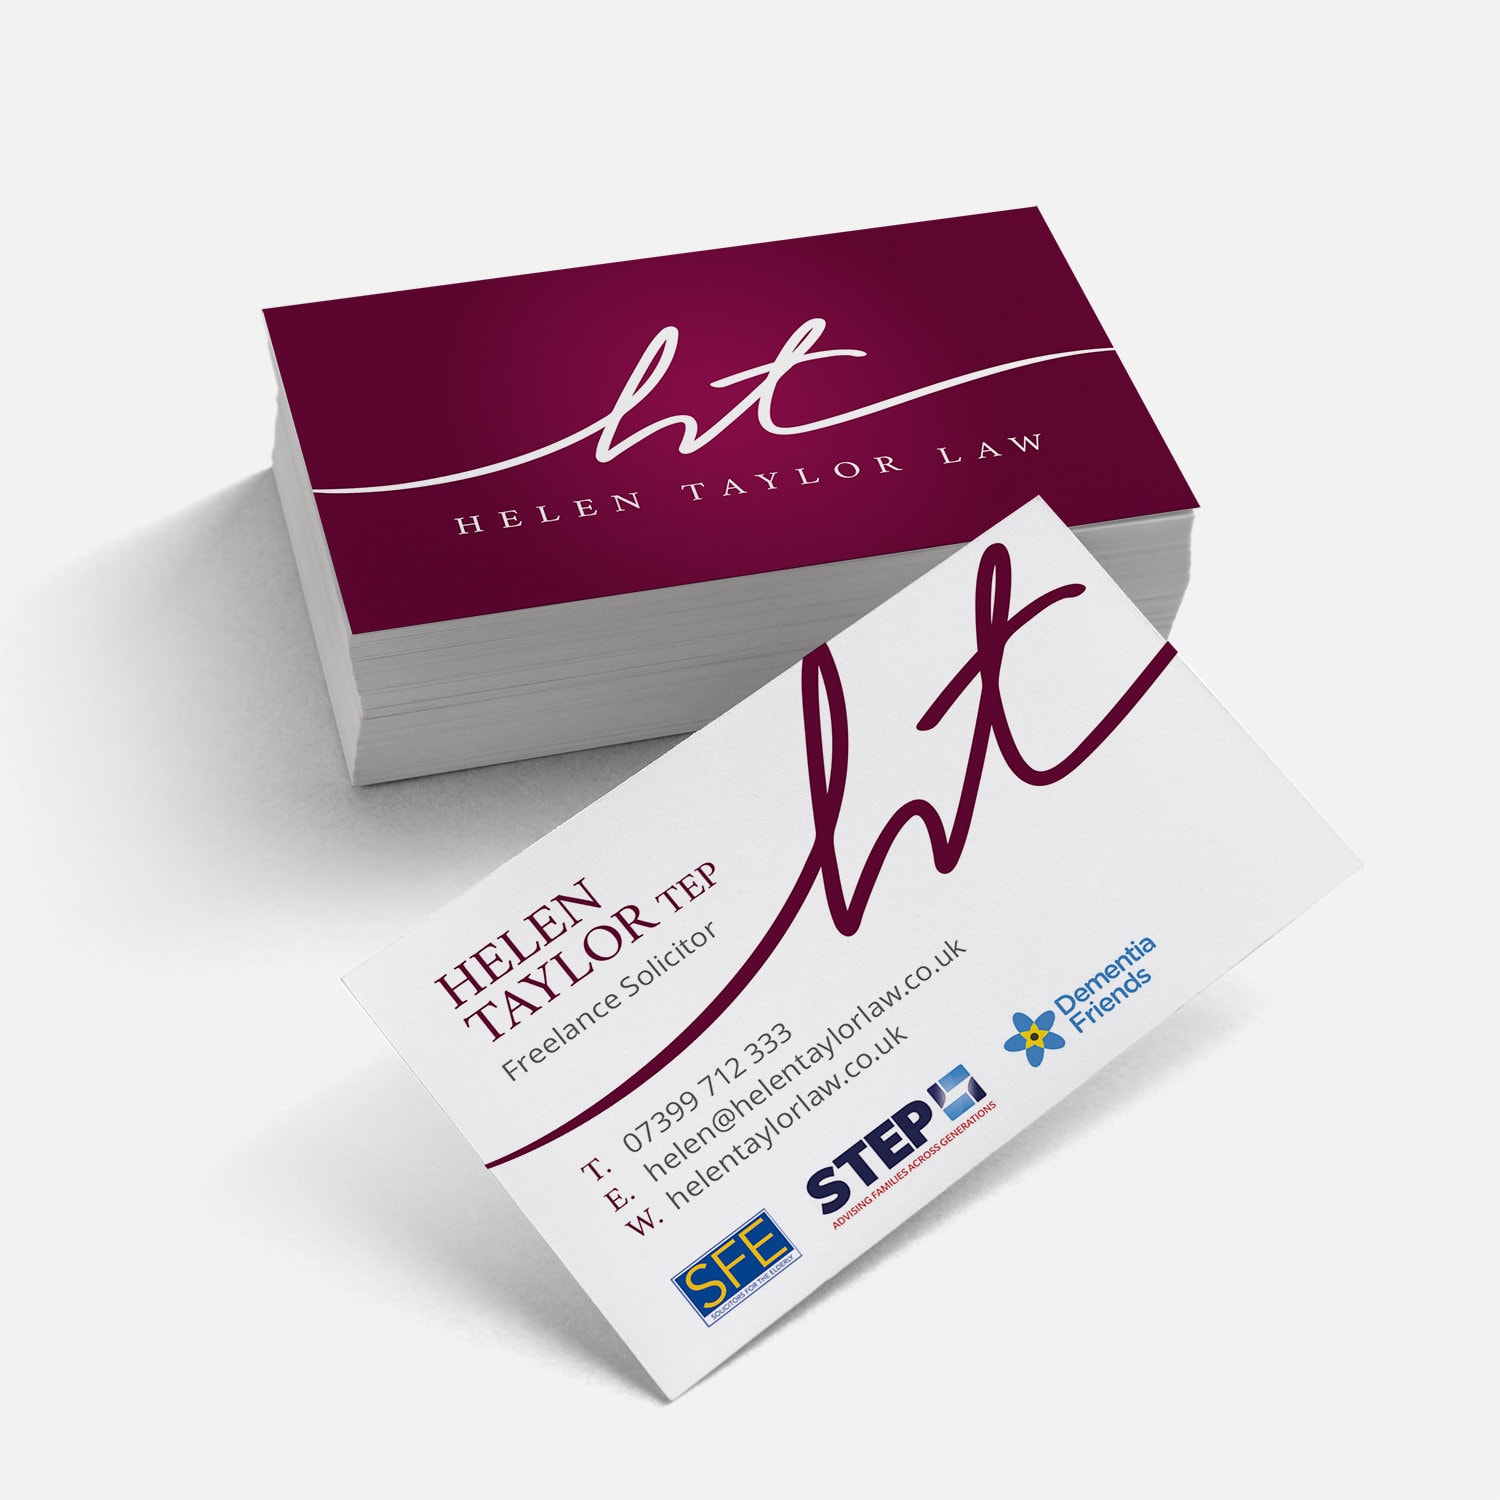 Helen Taylor business card design